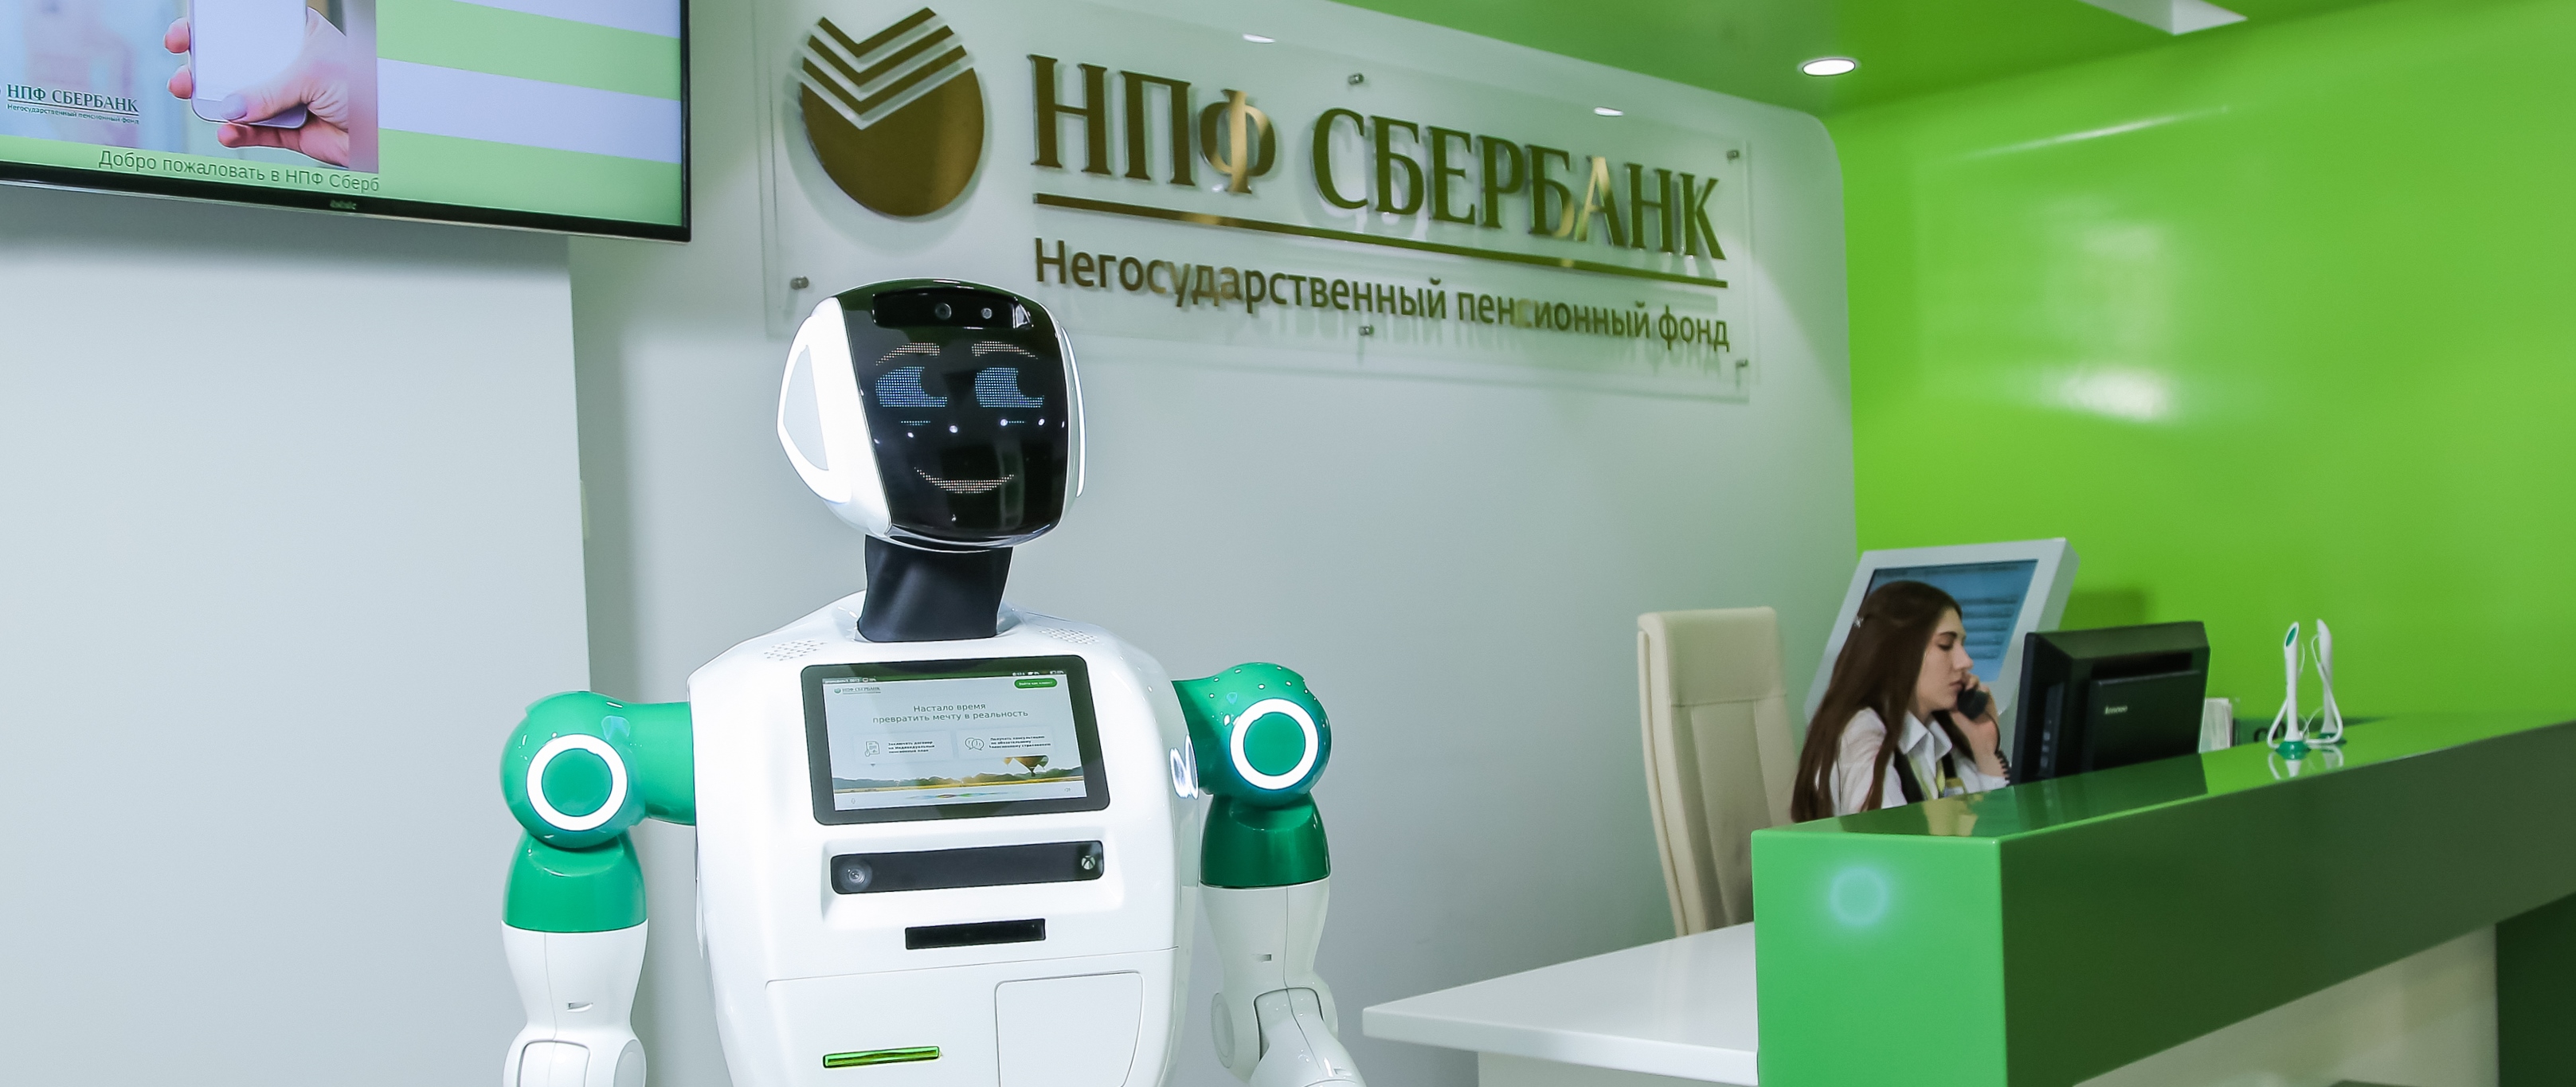 Искусственный интеллект в НПФ Сбербанка: сервисные роботы обслуживают клиентов.